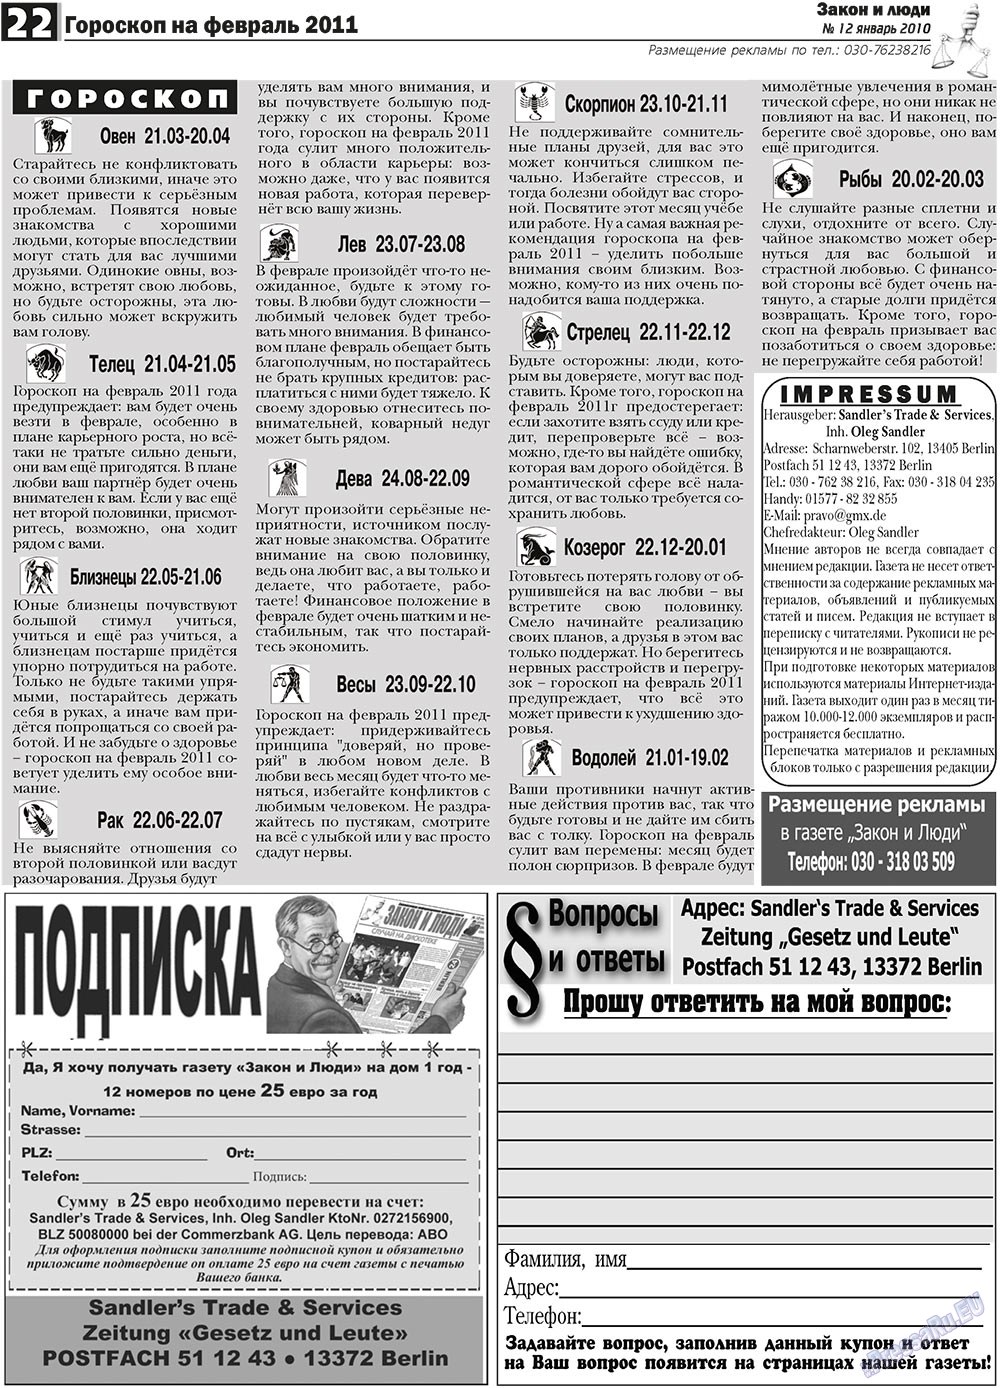 Закон и люди, газета. 2011 №1 стр.22